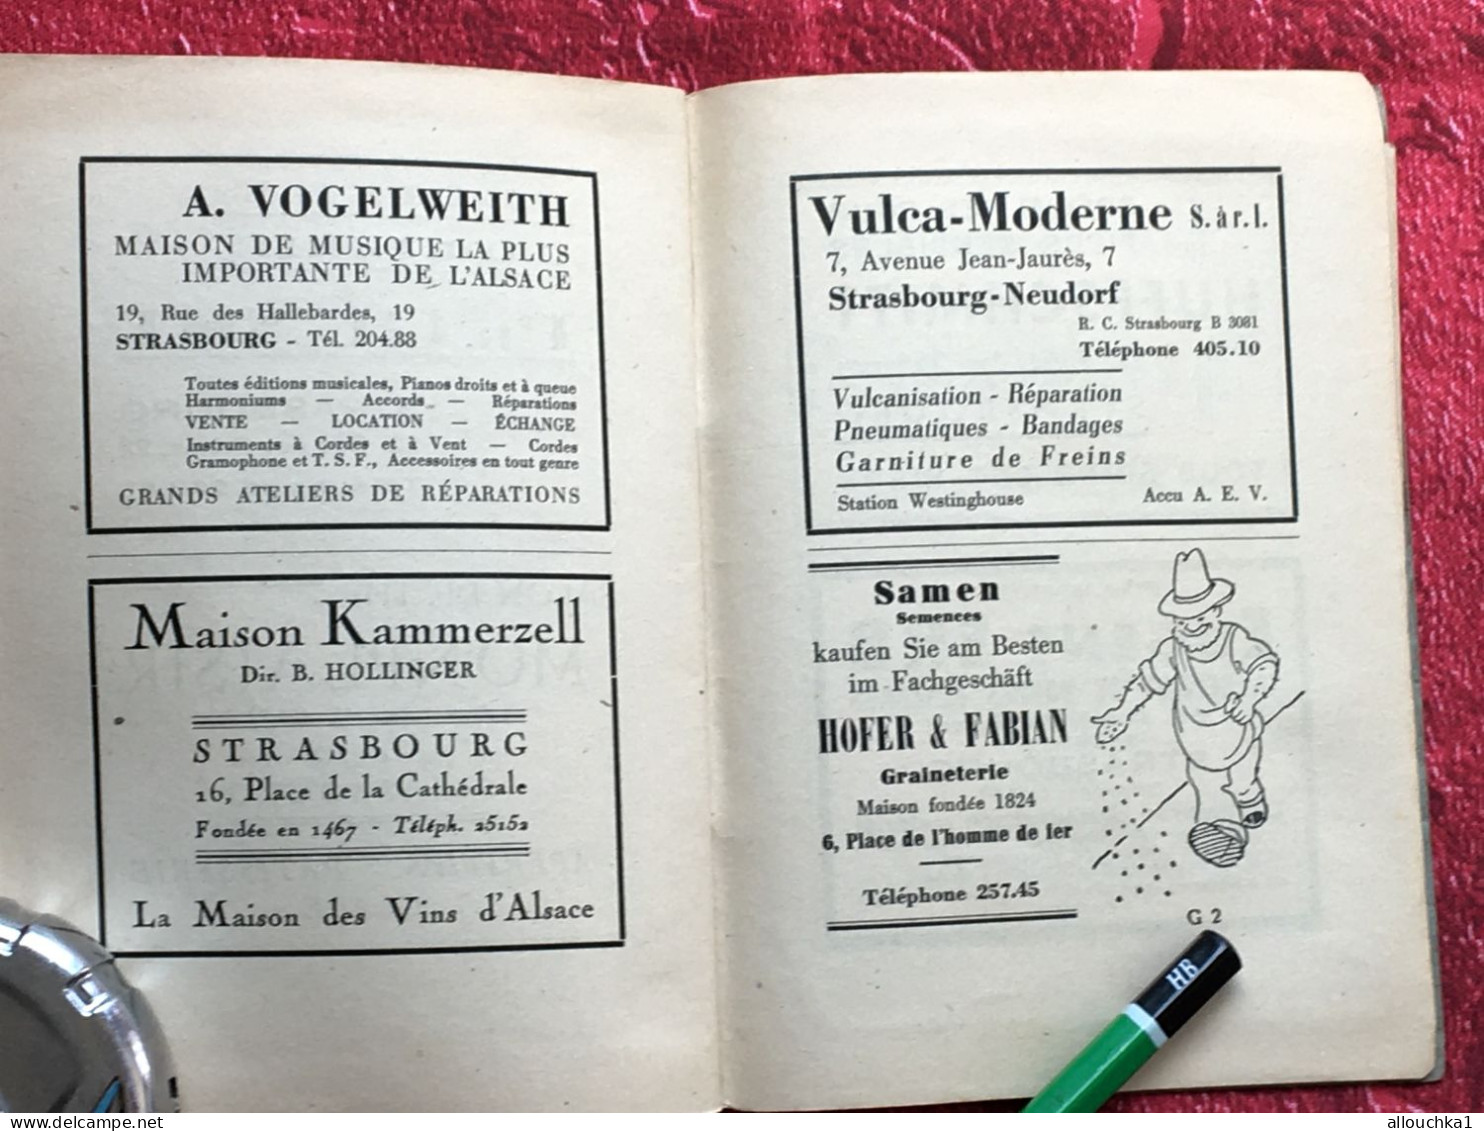 Rare de 1930- Ancien Plan de la ville de Strasbourg & Nomenclature des rues--Publicités Vintage éditions P.H. Heitz